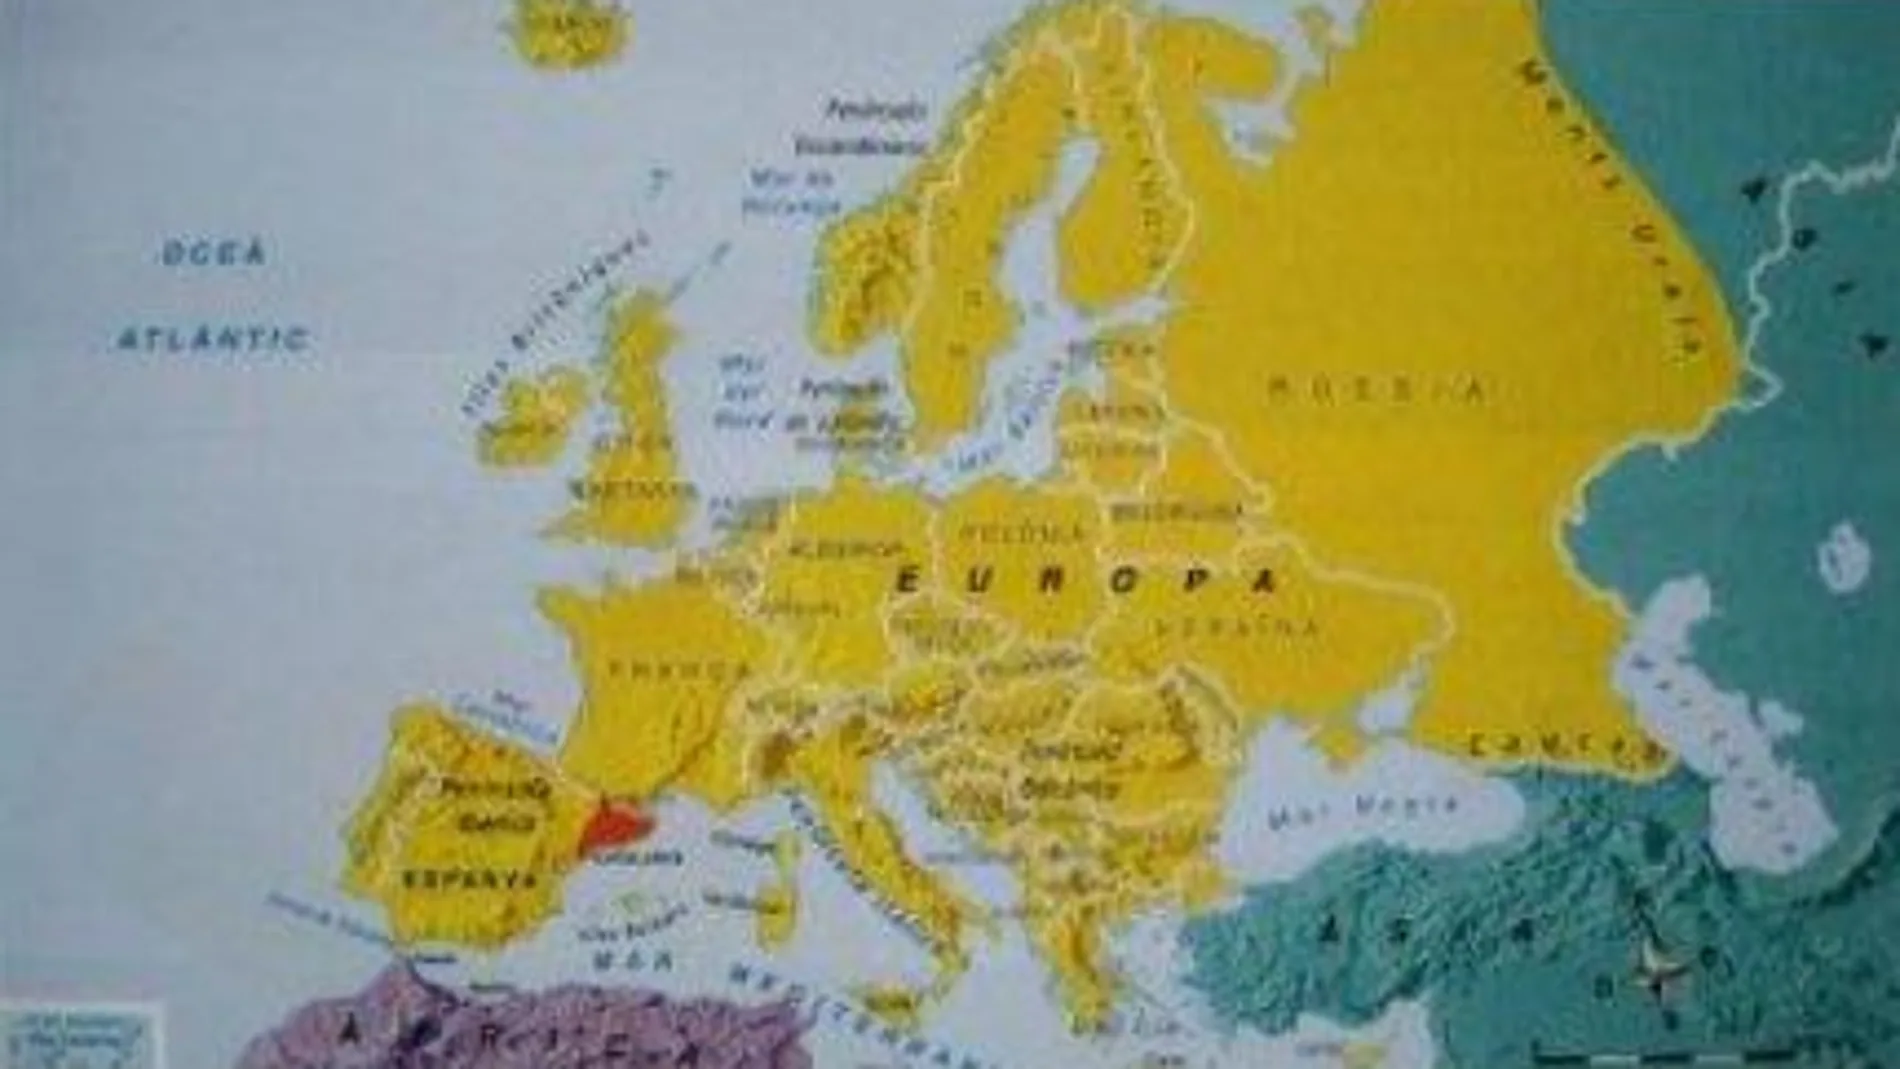 Mapa en el que se sugiere que Cataluña es un país independiente